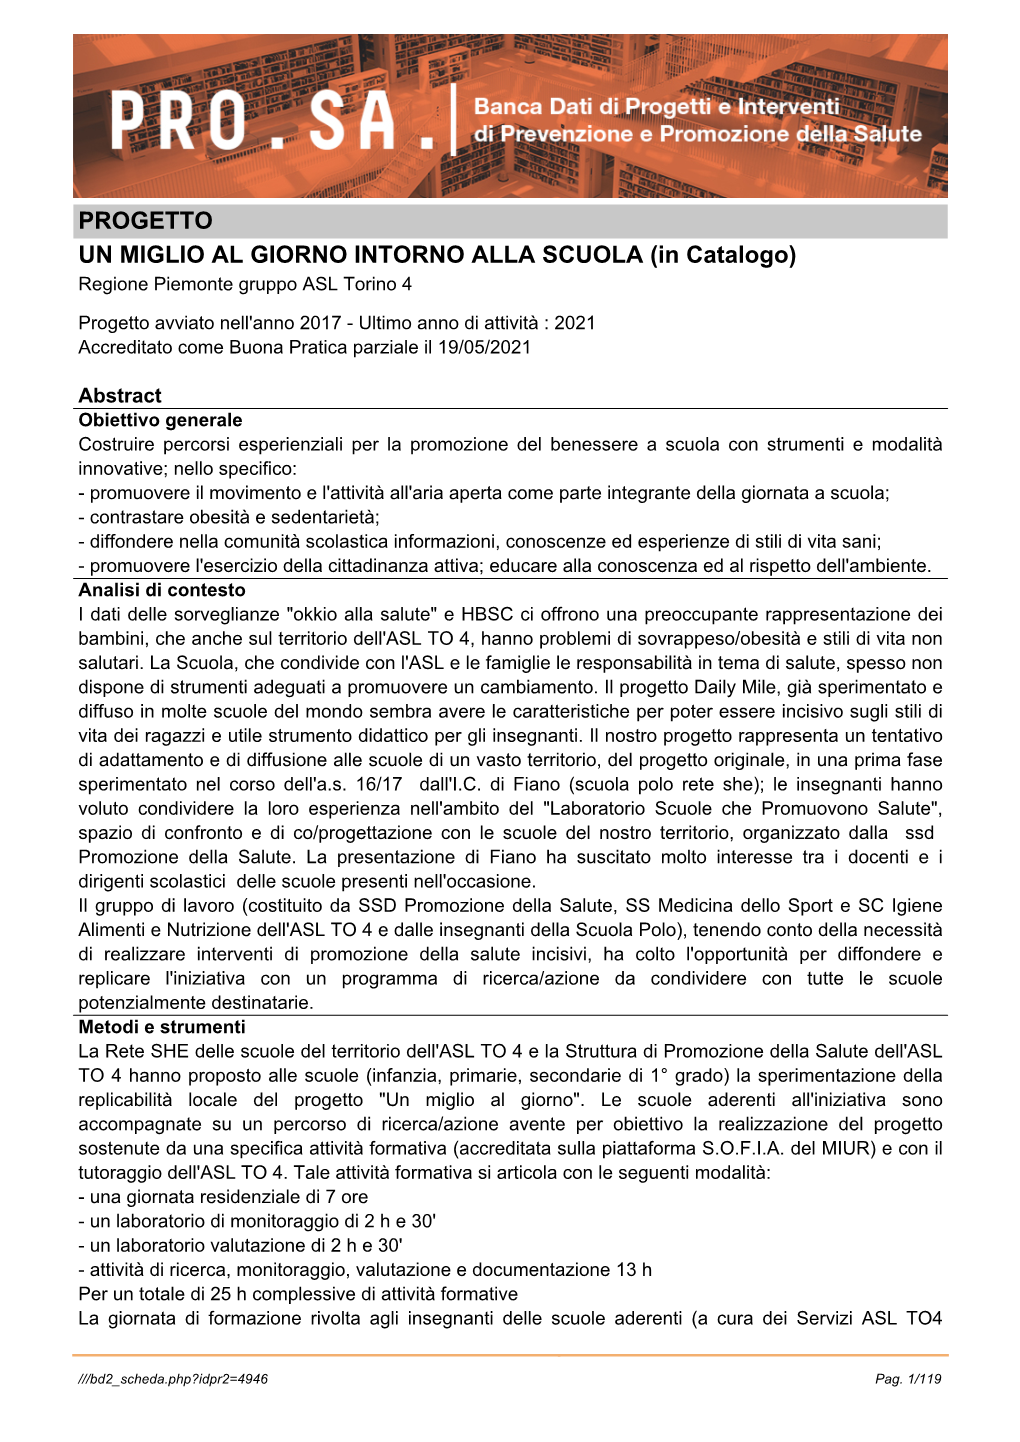 PROGETTO UN MIGLIO AL GIORNO INTORNO ALLA SCUOLA (In Catalogo) Regione Piemonte Gruppo ASL Torino 4